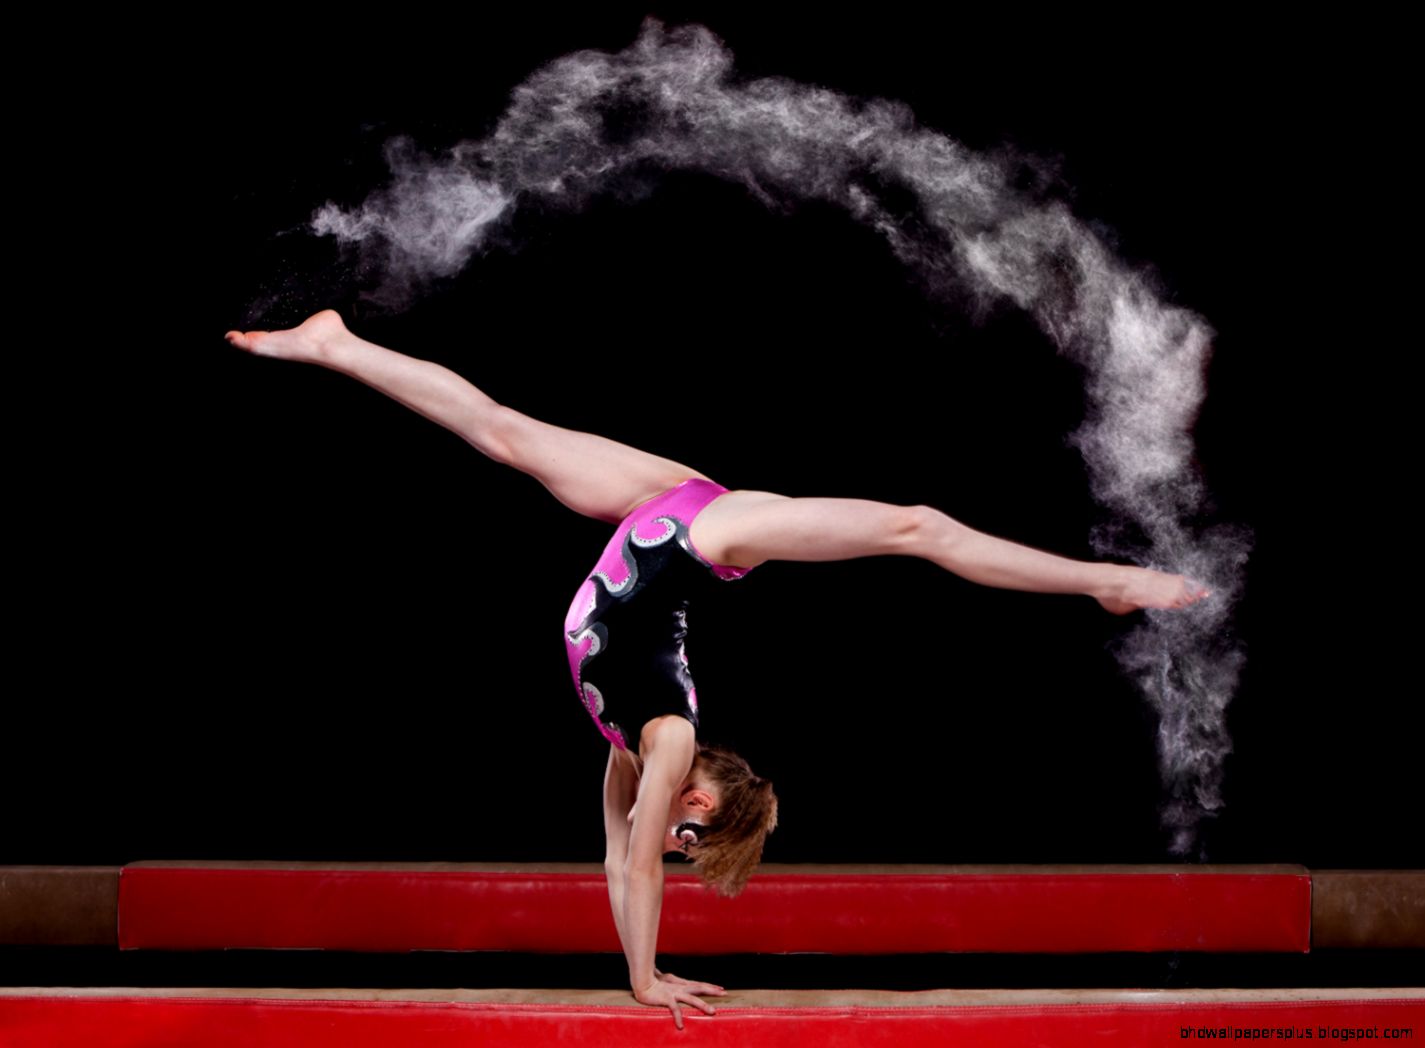 Cool Gymnastics Quotes - Hd Photos Of Gymnastics , HD Wallpaper & Backgrounds